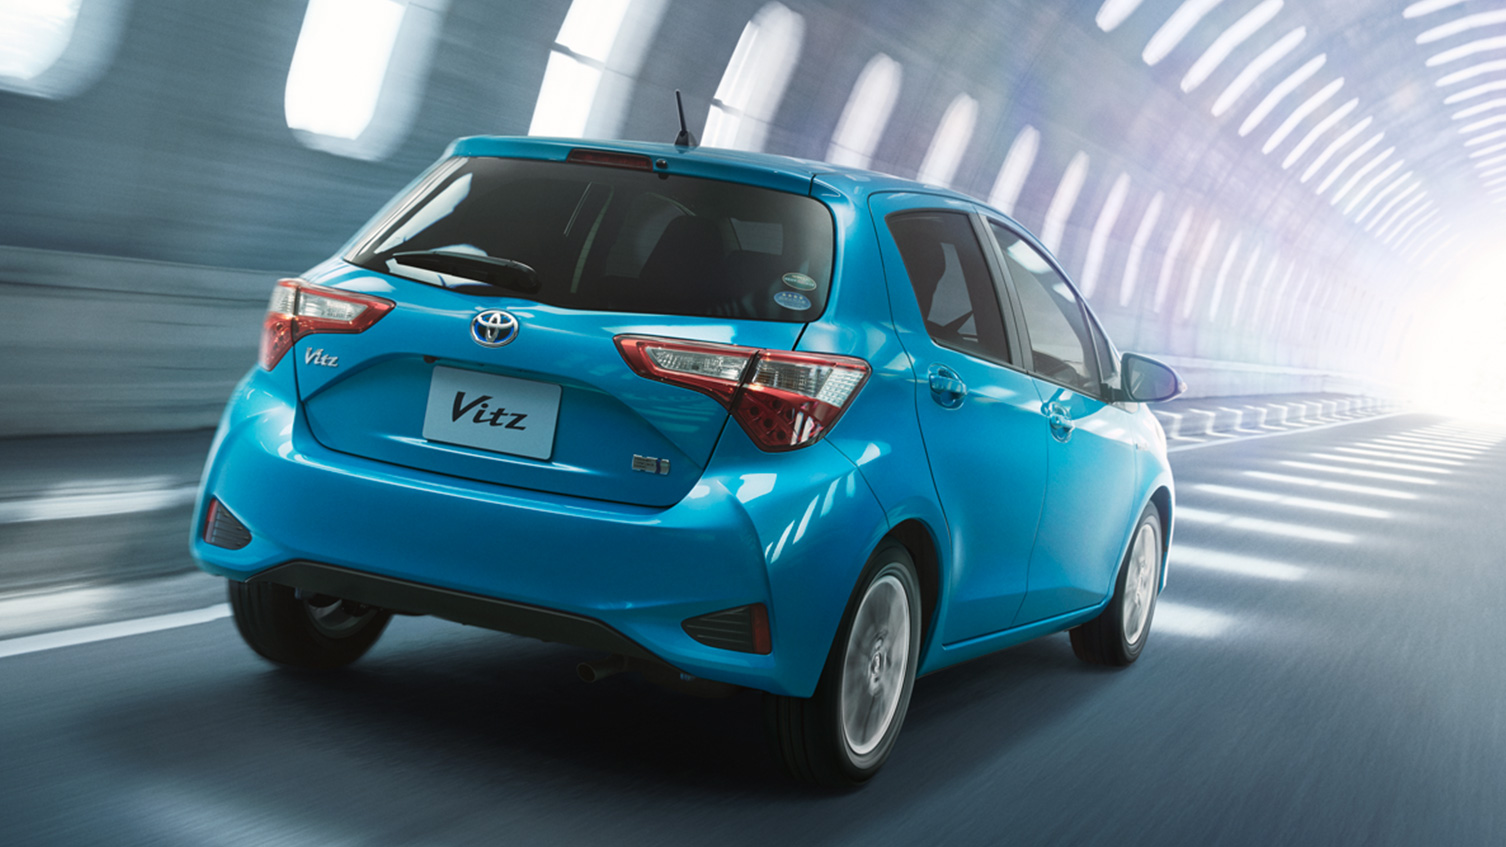 Toyota Vitz for sale in Nairobi, Kenya  Get Toyota Vitz prices in Kenya